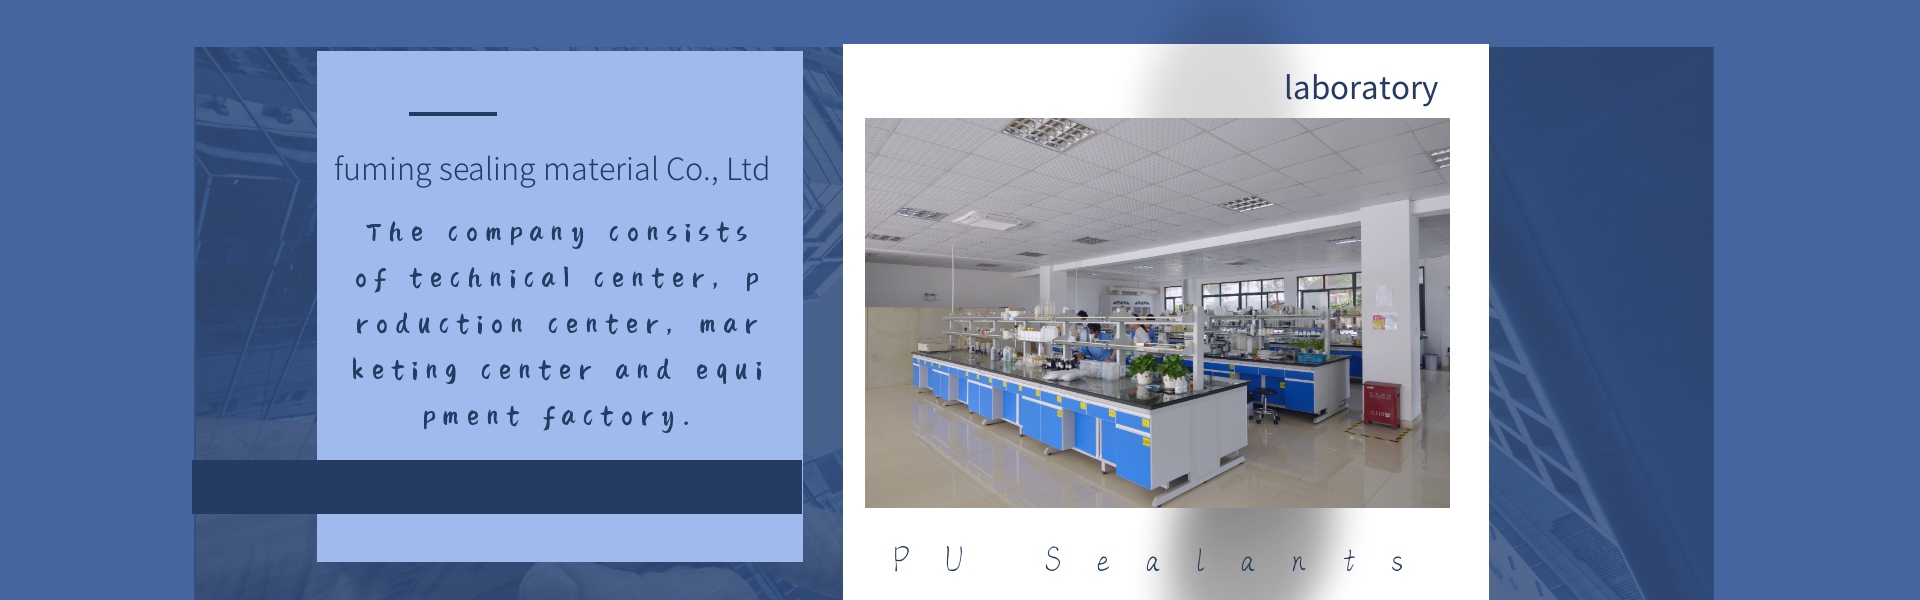 клей для электронной заливки, полиуретановые герметики, герметик для фильтров,Dongguan fuming sealing material Co., Ltd